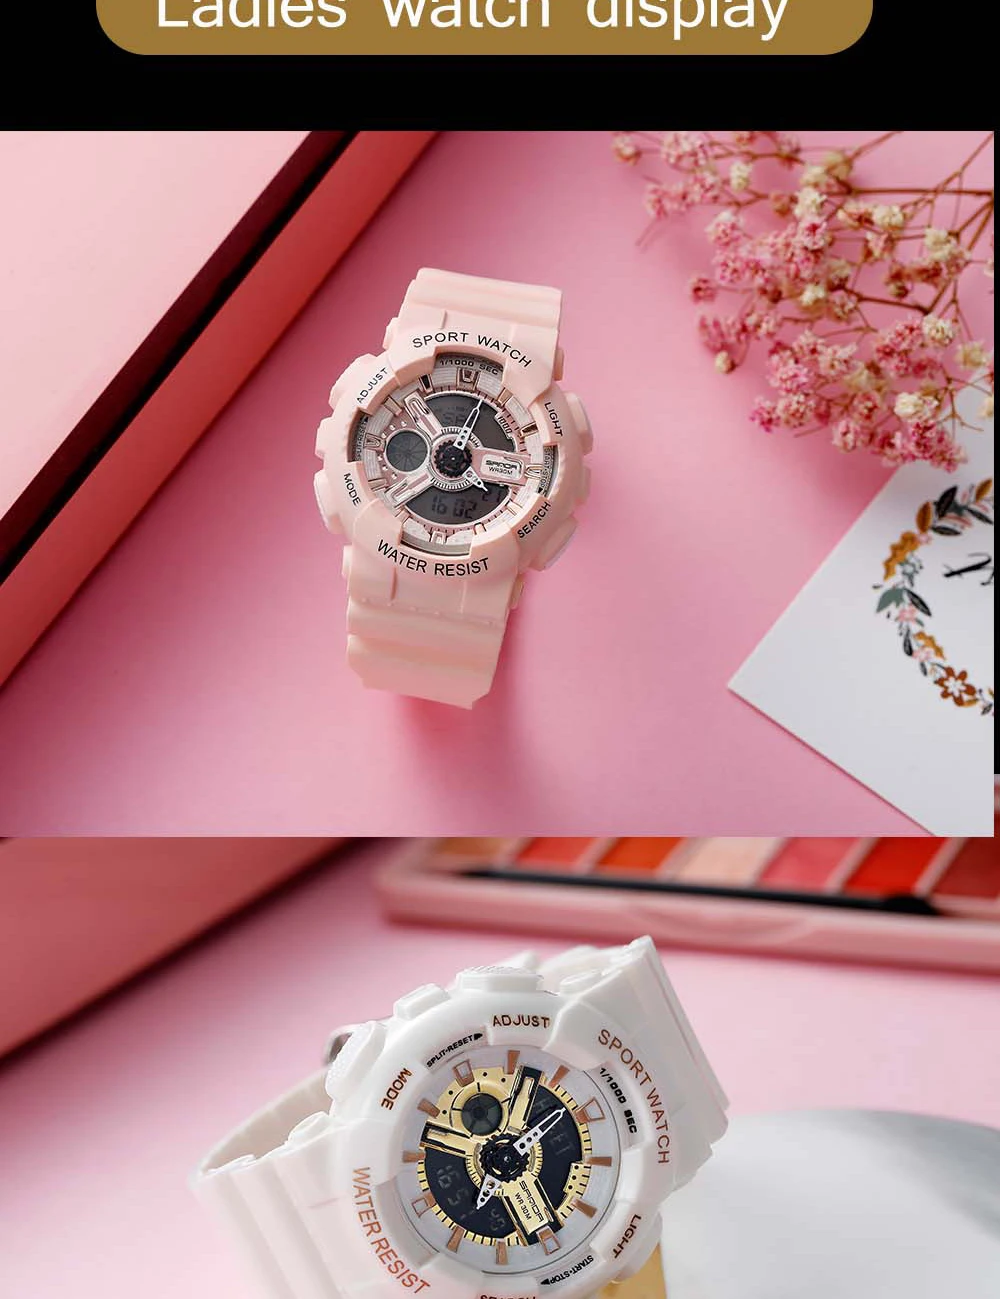 SANDA военные мужские часы Топ бренд класса люкс водонепроницаемые спортивные наручные часы G Стиль Кварцевые часы мужские часы relogio masculino